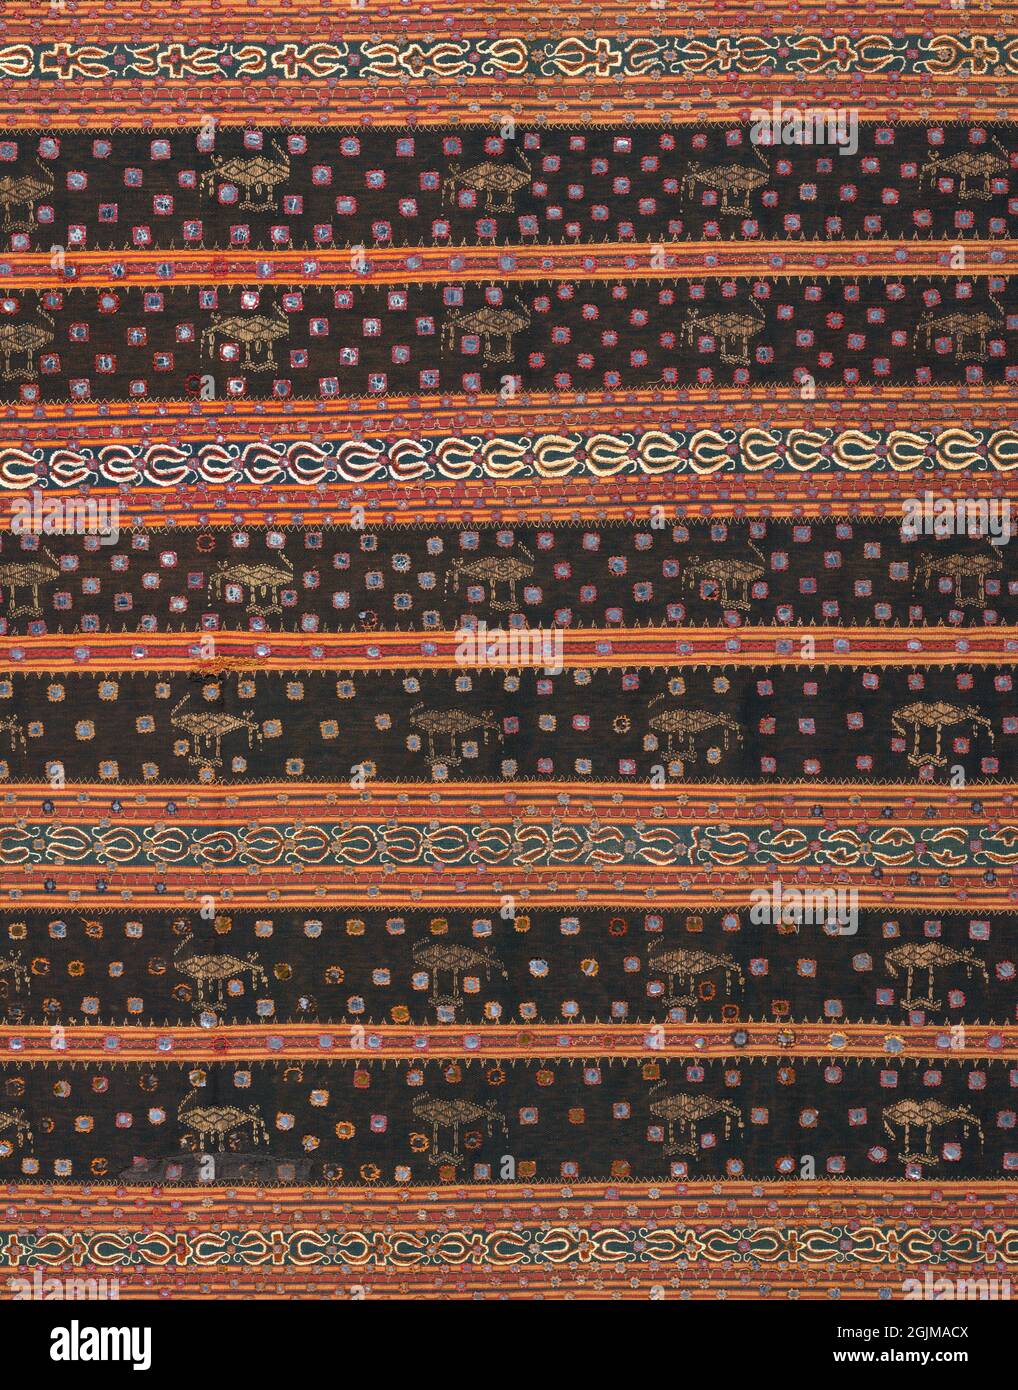 Particolare di un sarong femminile festival tessuto decorato con ricami e pezzi di mica attaccati in file. Lampung, Sumatra, Indonesia. Probabile 19 ° secolo. Foto Stock